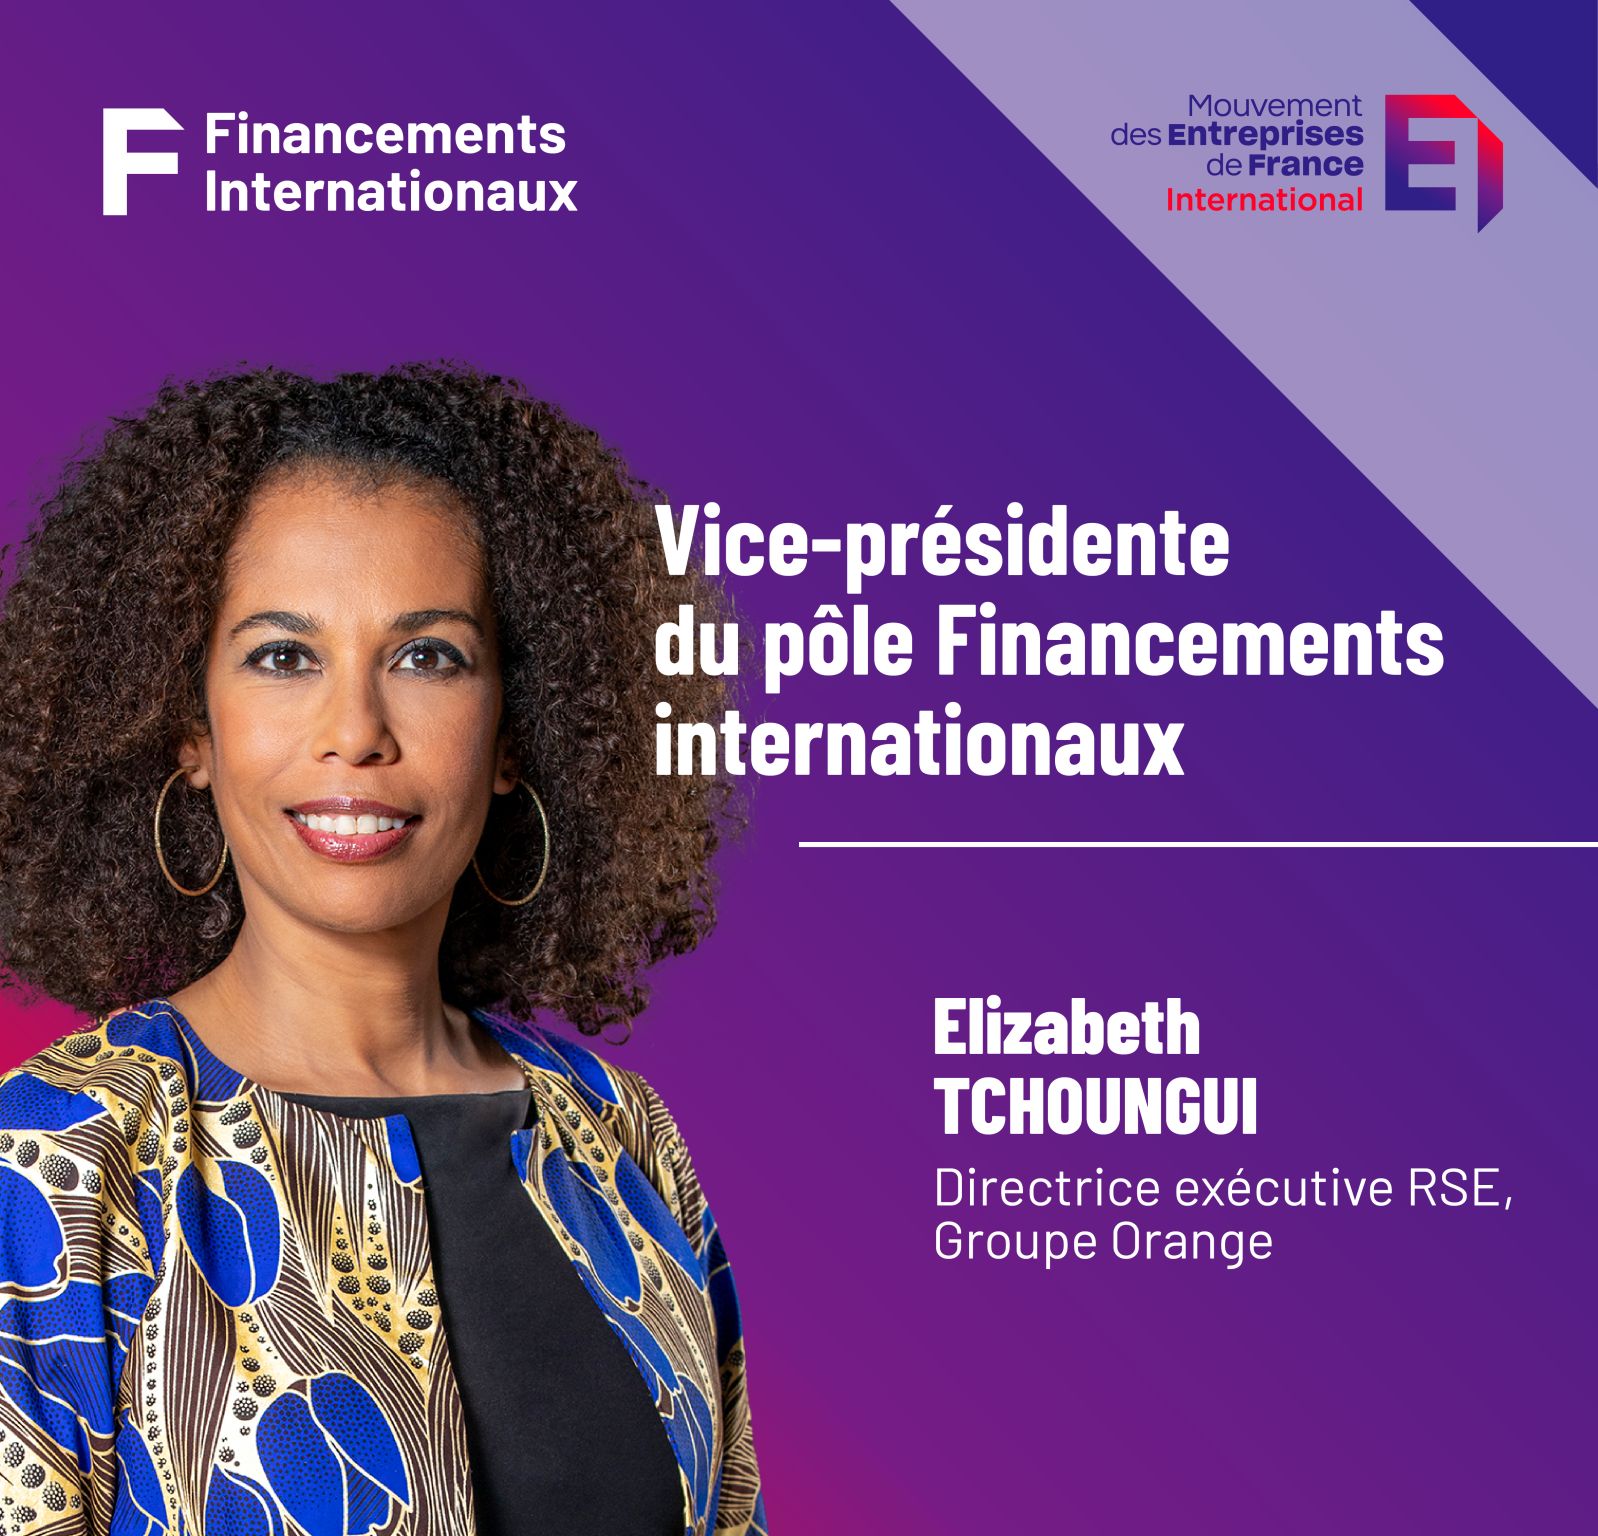 Elisabeth TCHOUNGUI nommée Vice-Présidente du pôle Financements internationaux du Mouvement des Entreprises de France International.